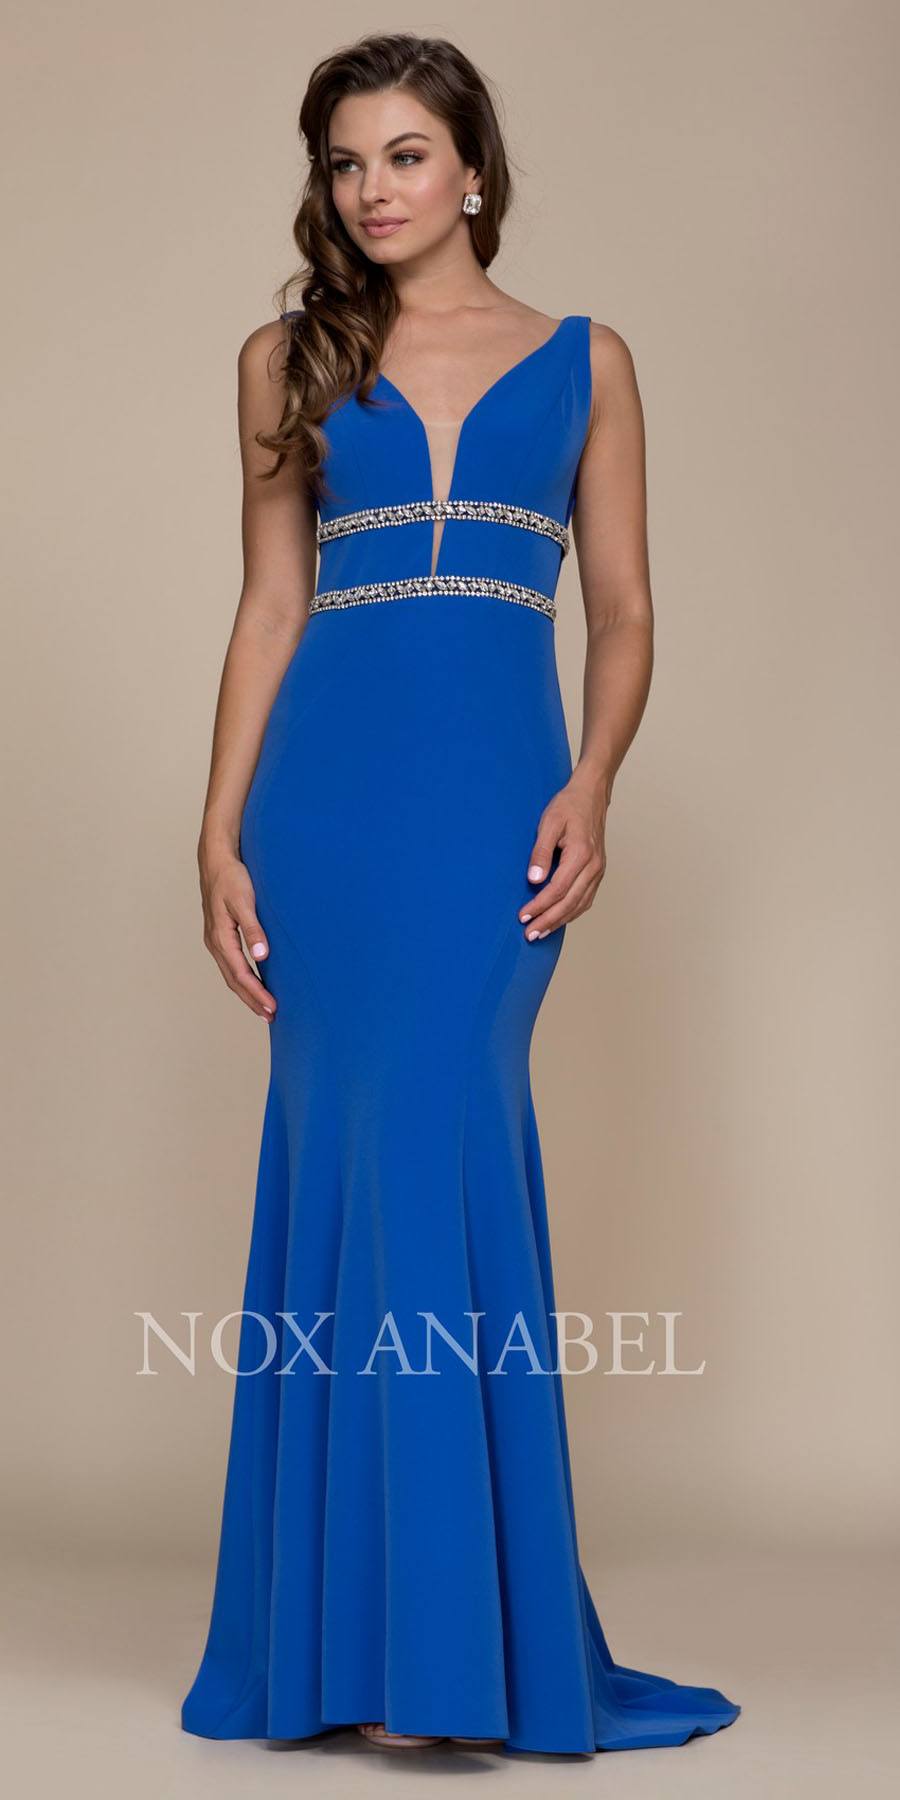 V-Neck Embellished Long Prom Dress Open Back Royal Blue